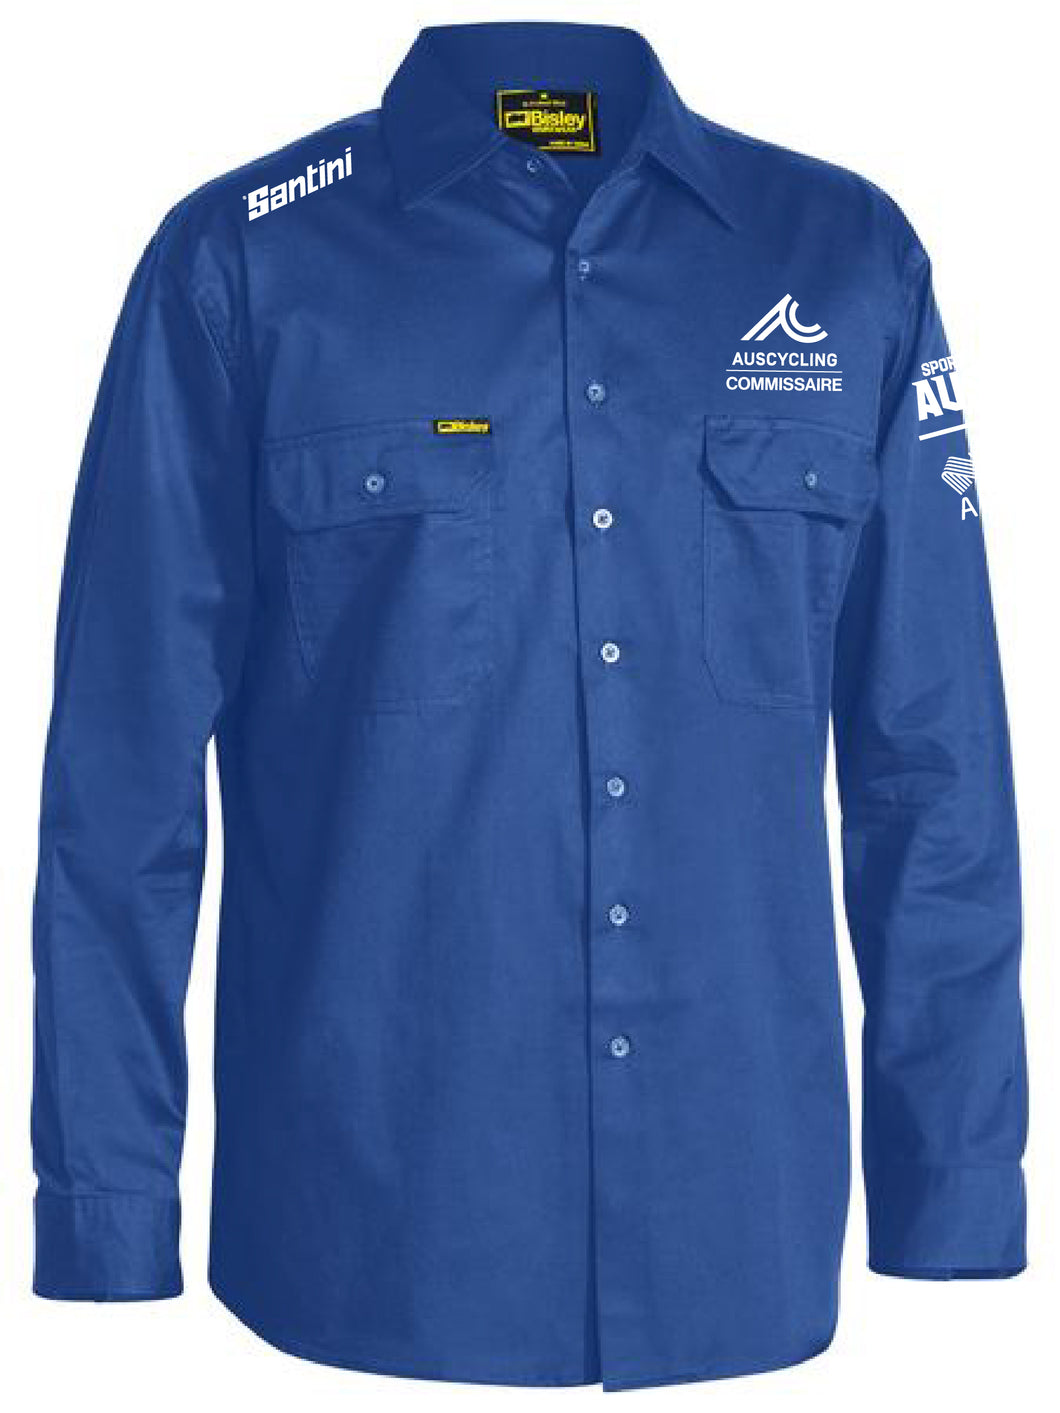 AusCycling Commissaire Work Shirt